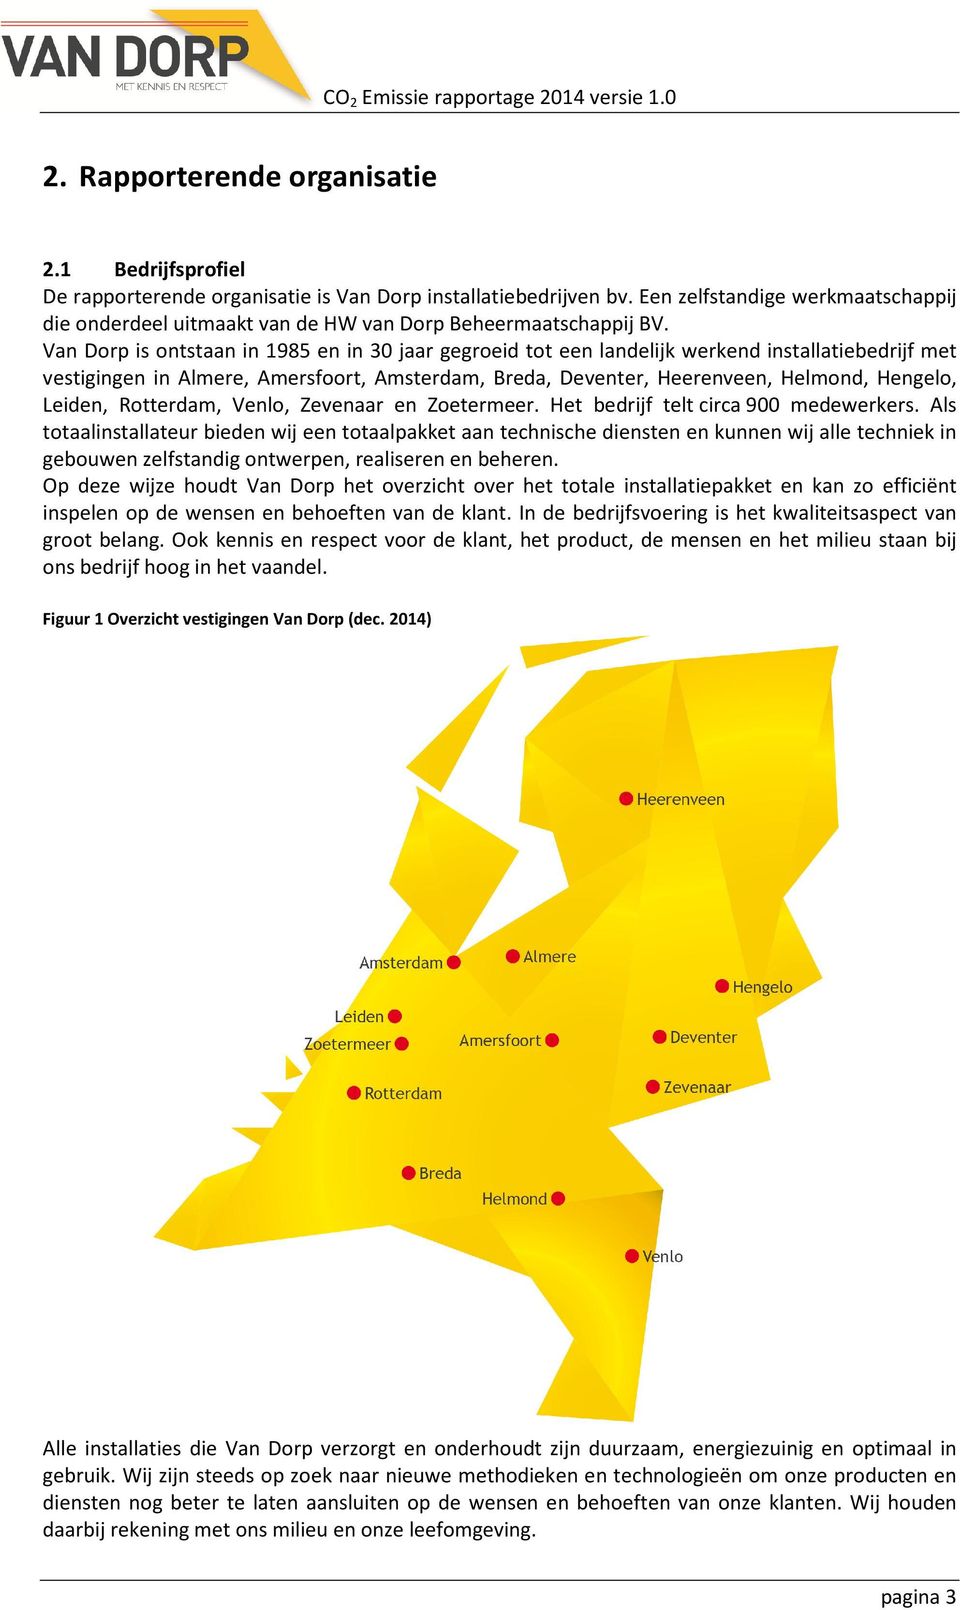 Van Dorp is ontstaan in 1985 en in 30 jaar gegroeid tot een landelijk werkend installatiebedrijf met vestigingen in Almere, Amersfoort, Amsterdam, Breda, Deventer, Heerenveen, Helmond, Hengelo,